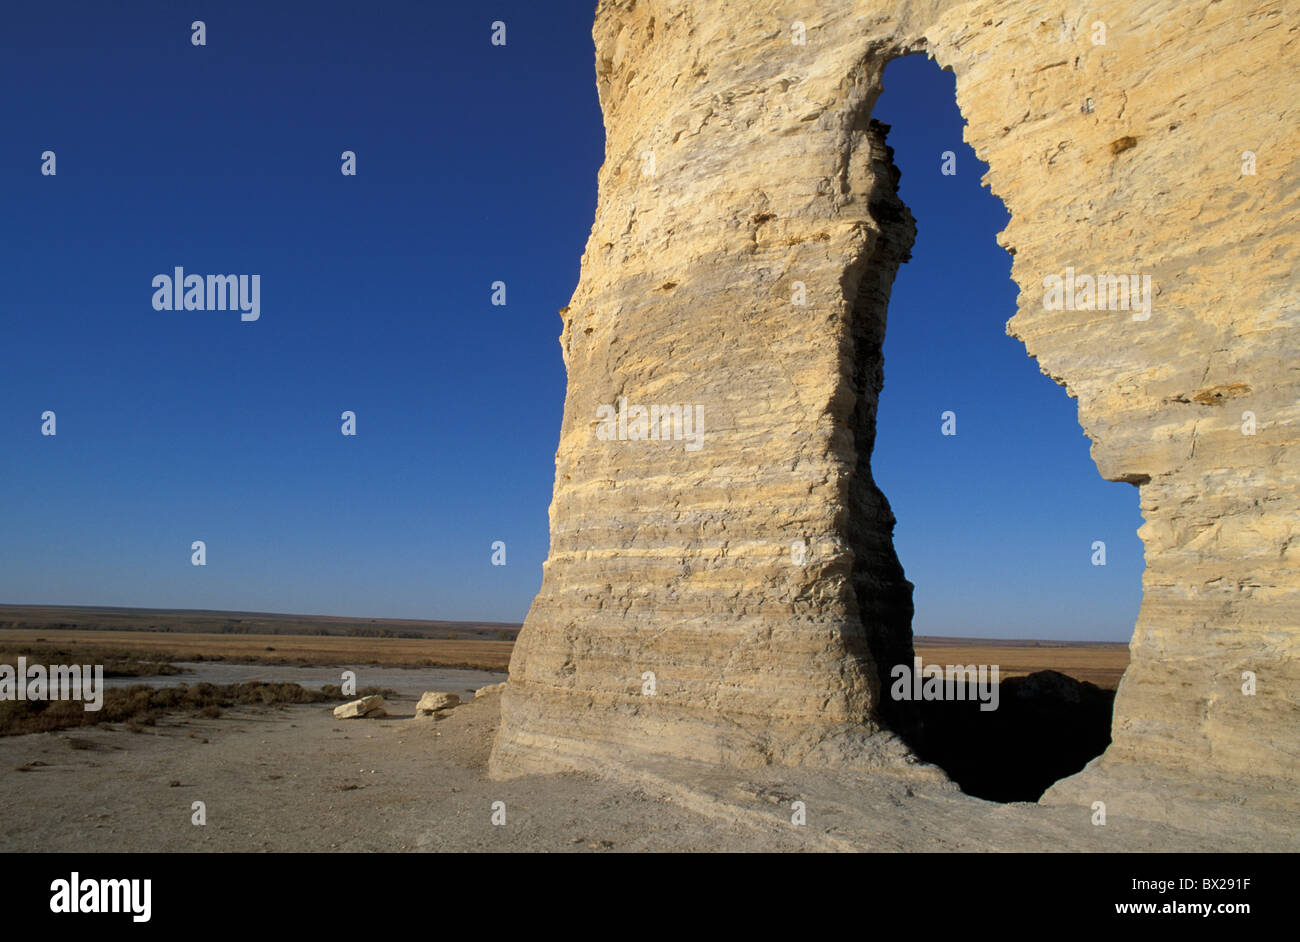 Oakley Kansas USA USA Amerika 10817010 Landschaft Rock Cliff Erosion Prärie Denkmal Felsen Loch Stockfoto